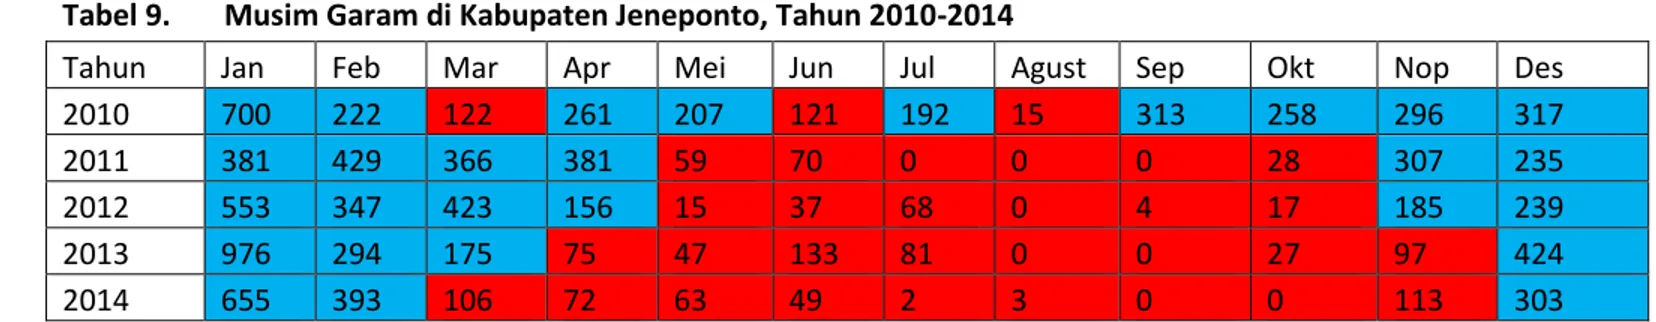 Tabel 9.  Musim Garam di Kabupaten Jeneponto, Tahun 2010-2014 